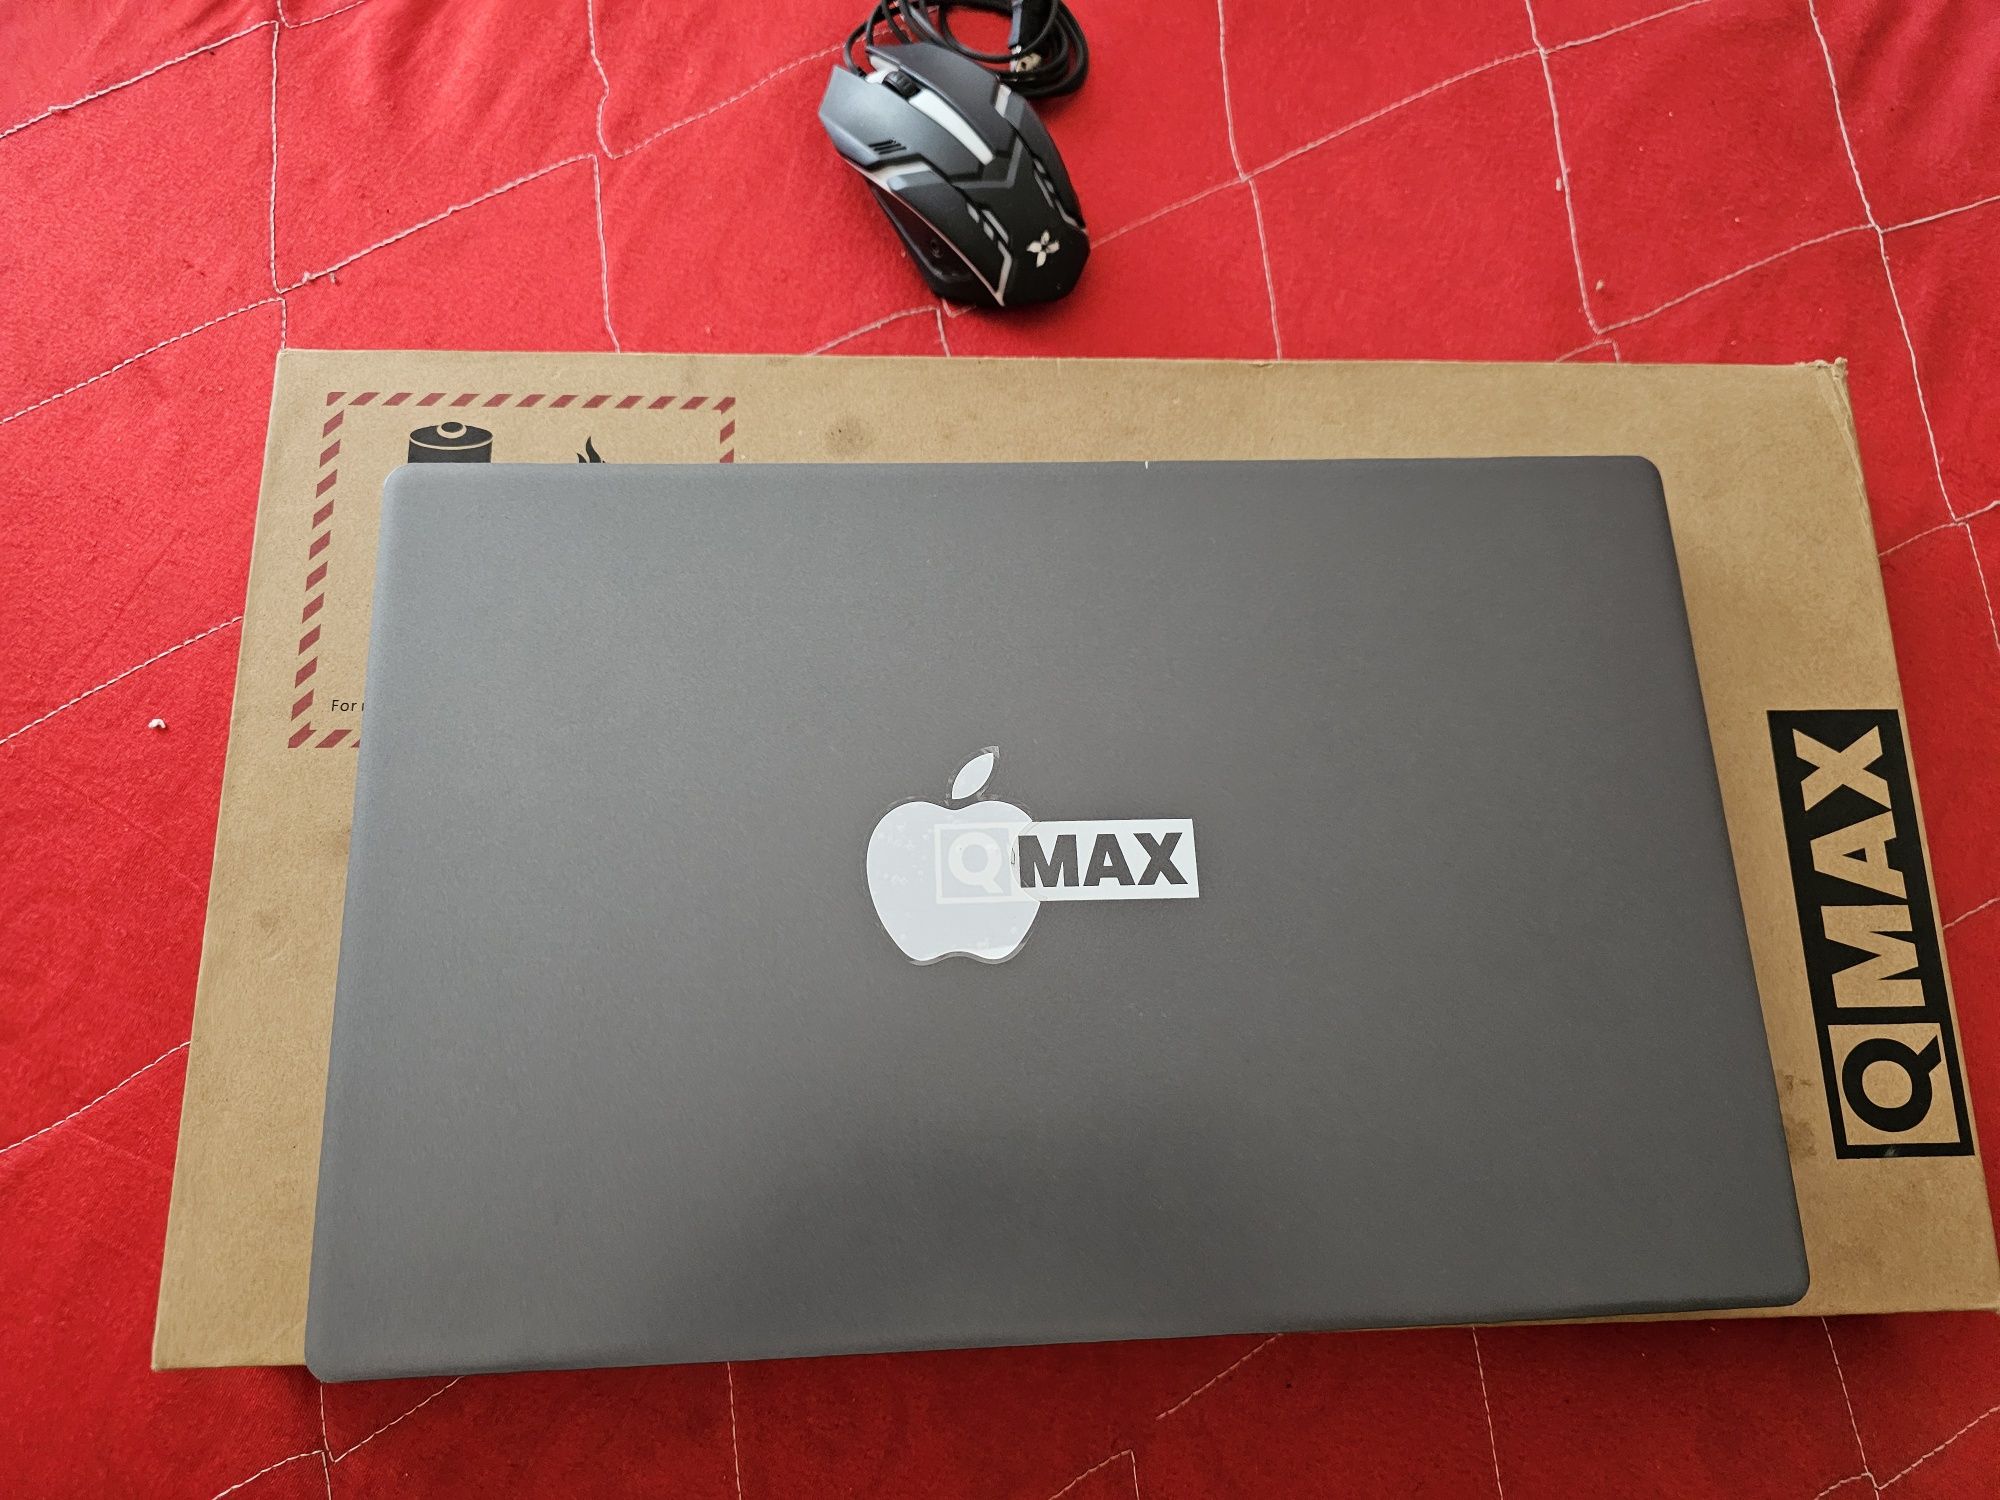 Нотбук QMAX почти новый